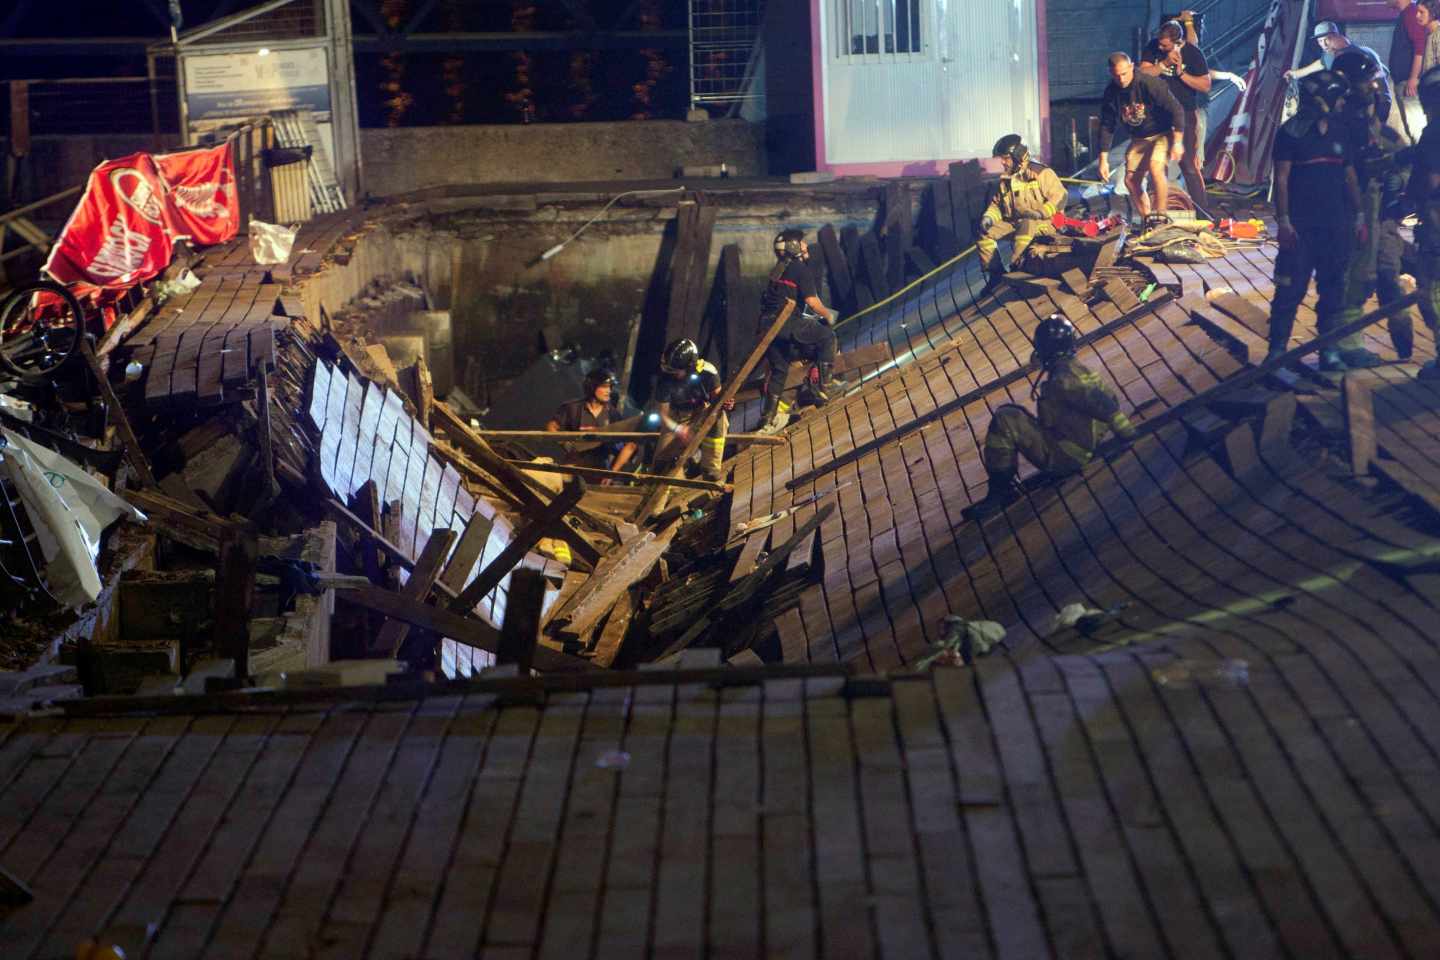 Balance del derrumbe del paseo marítimo de Vigo: 377 heridos, 5 de ellos graves